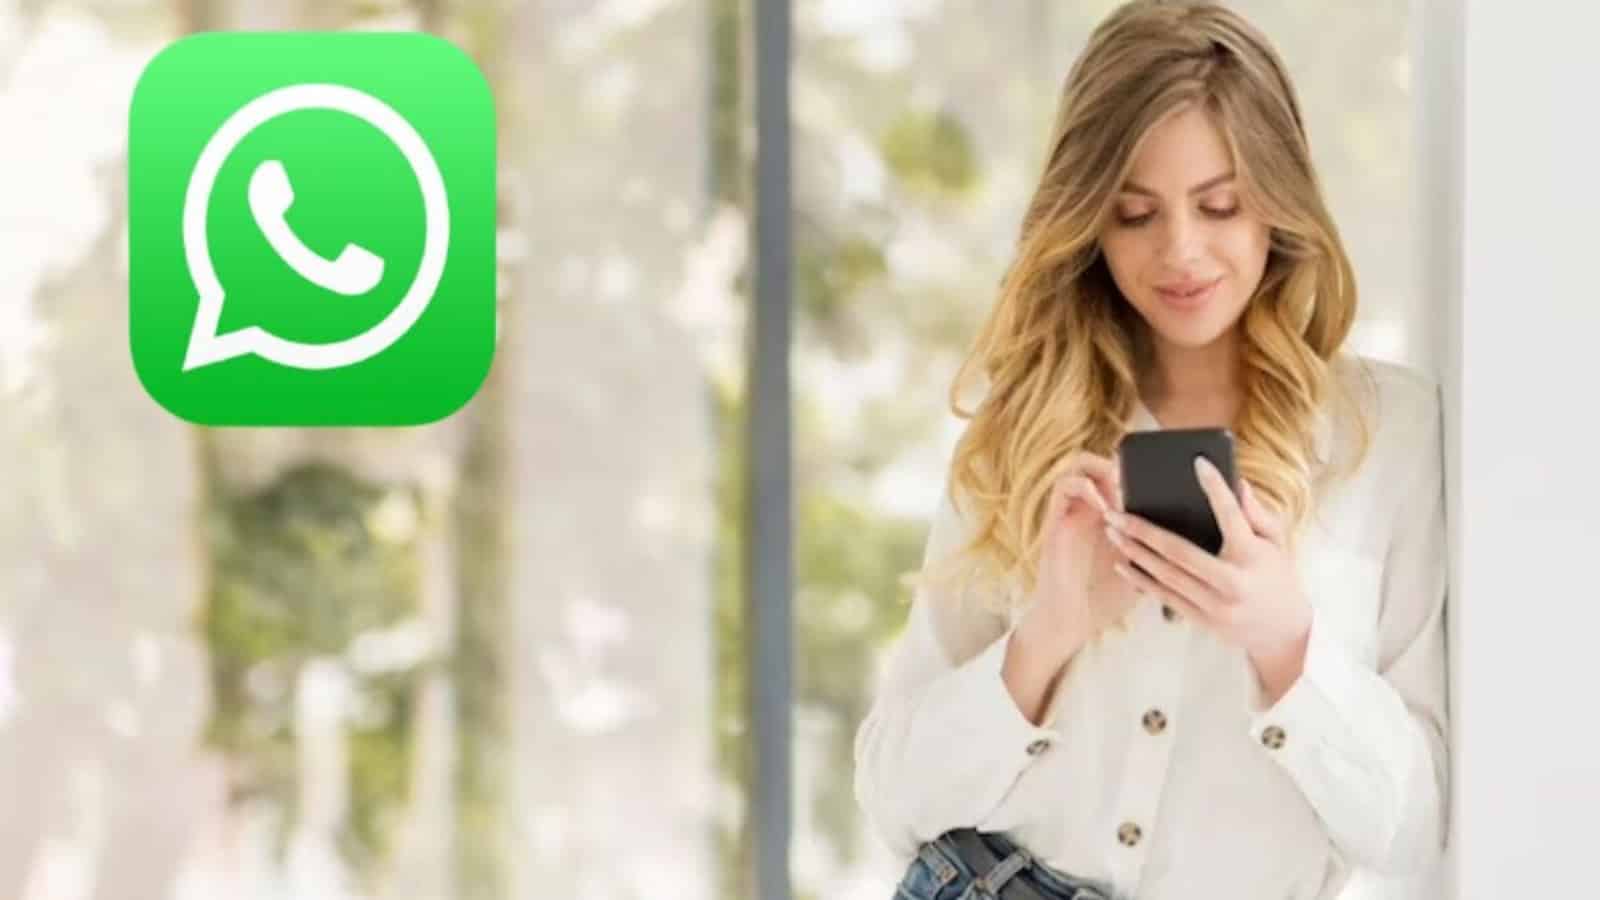 WhatsApp SPREMUTO al massimo da TRE funzioni segrete e gratuite